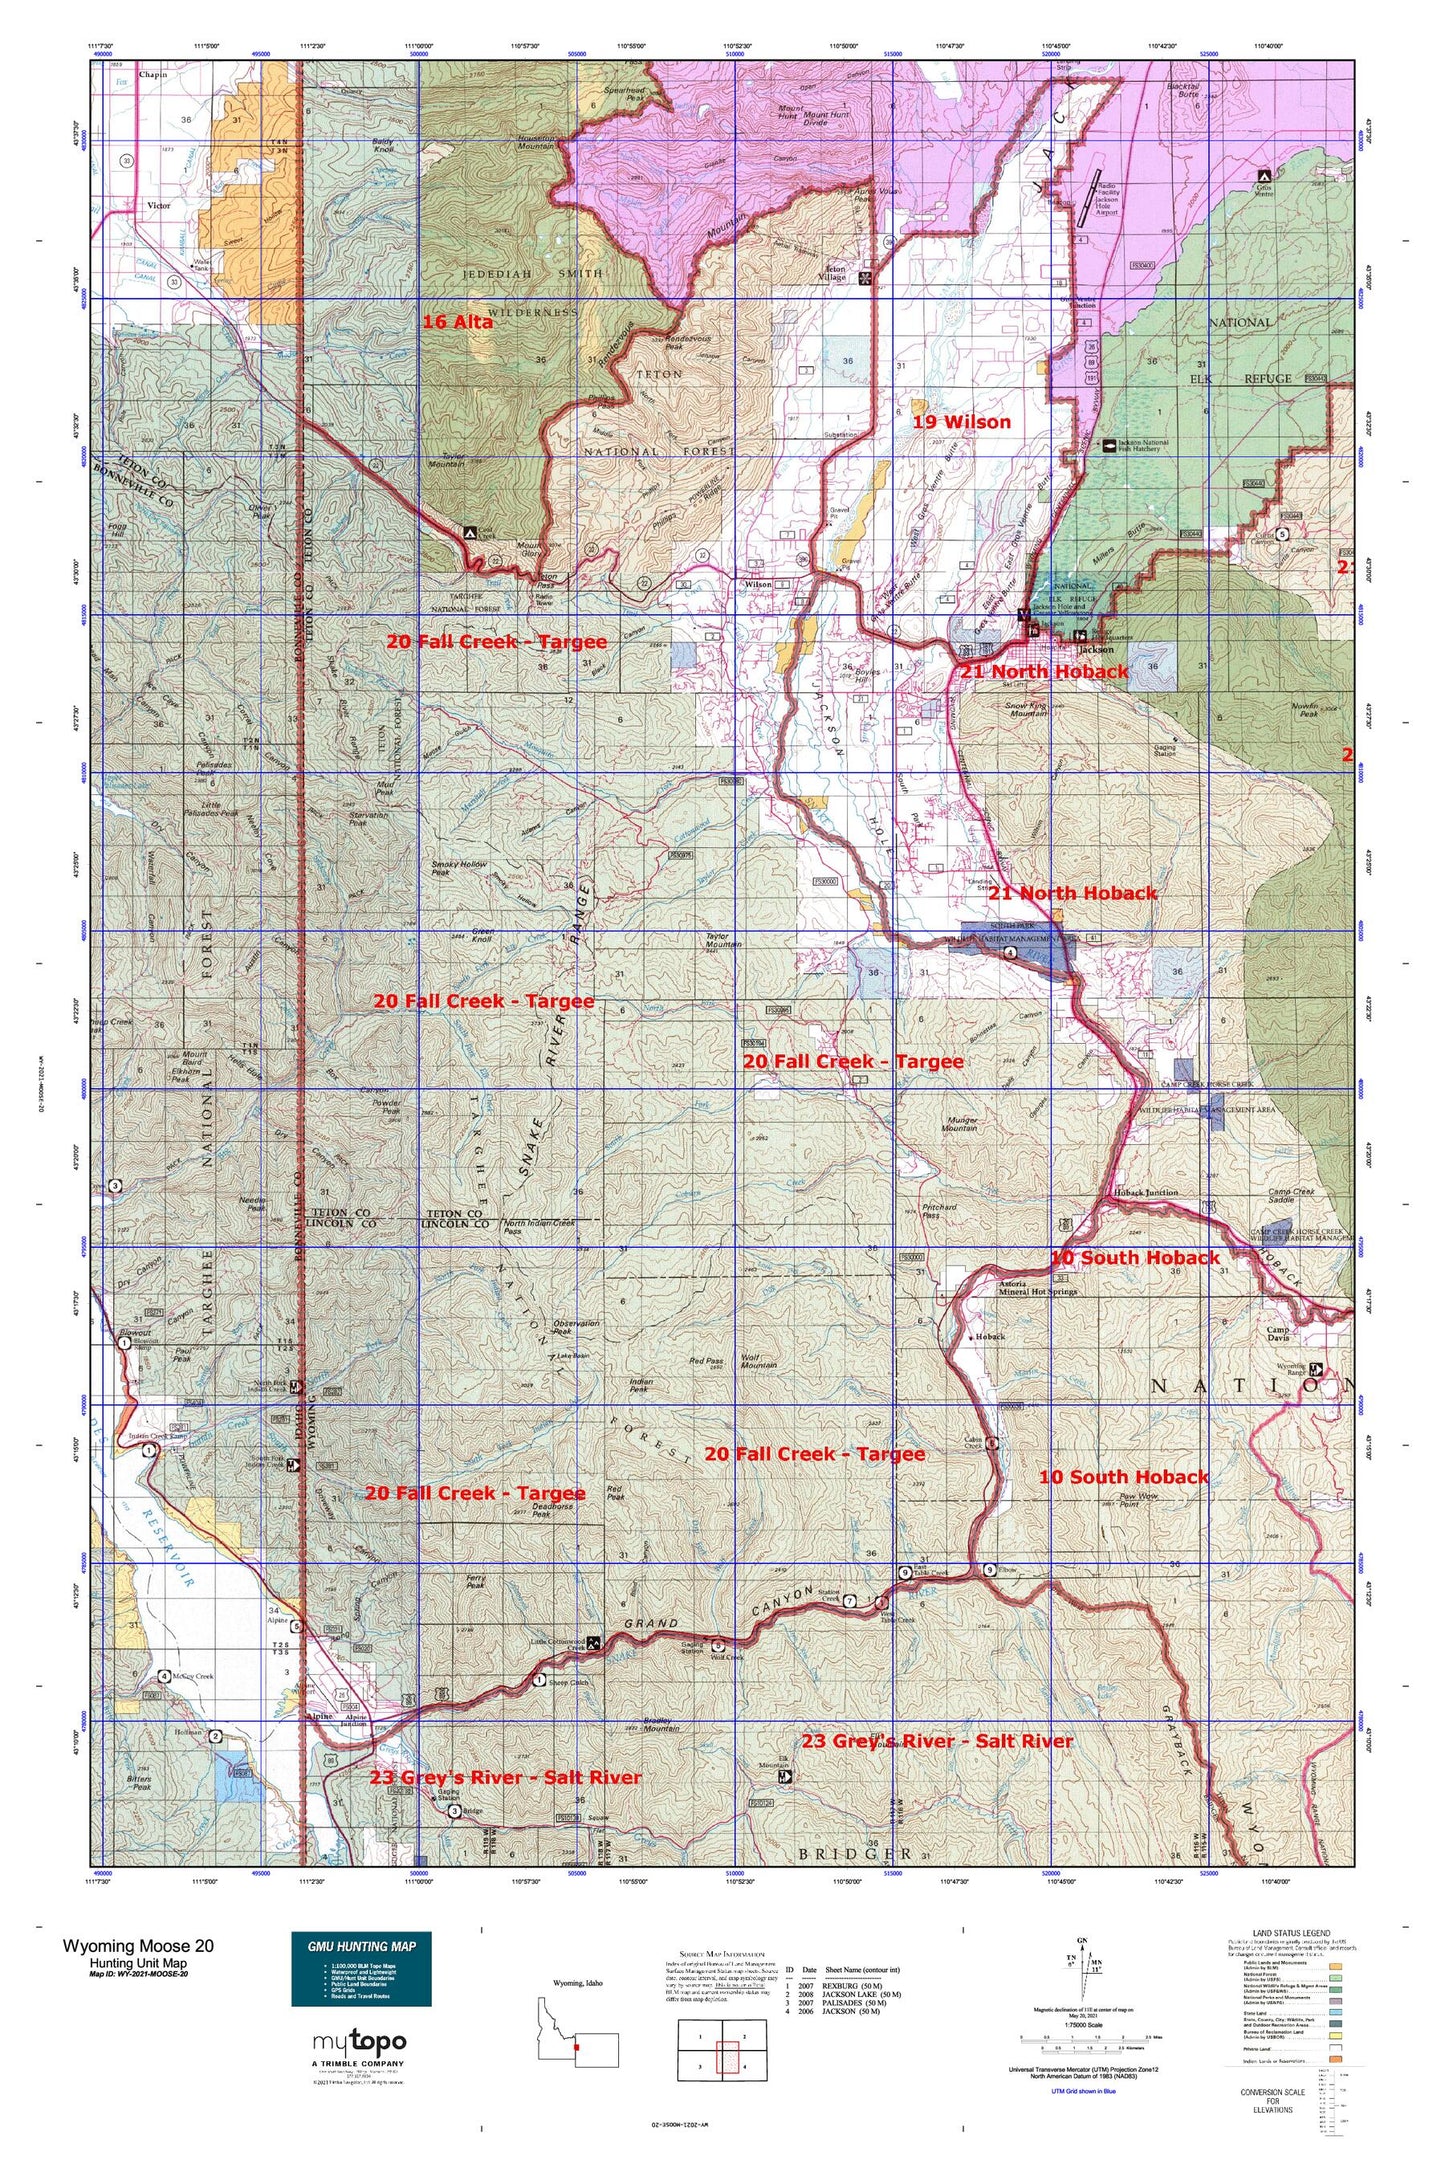 Wyoming Moose 20 Map Image